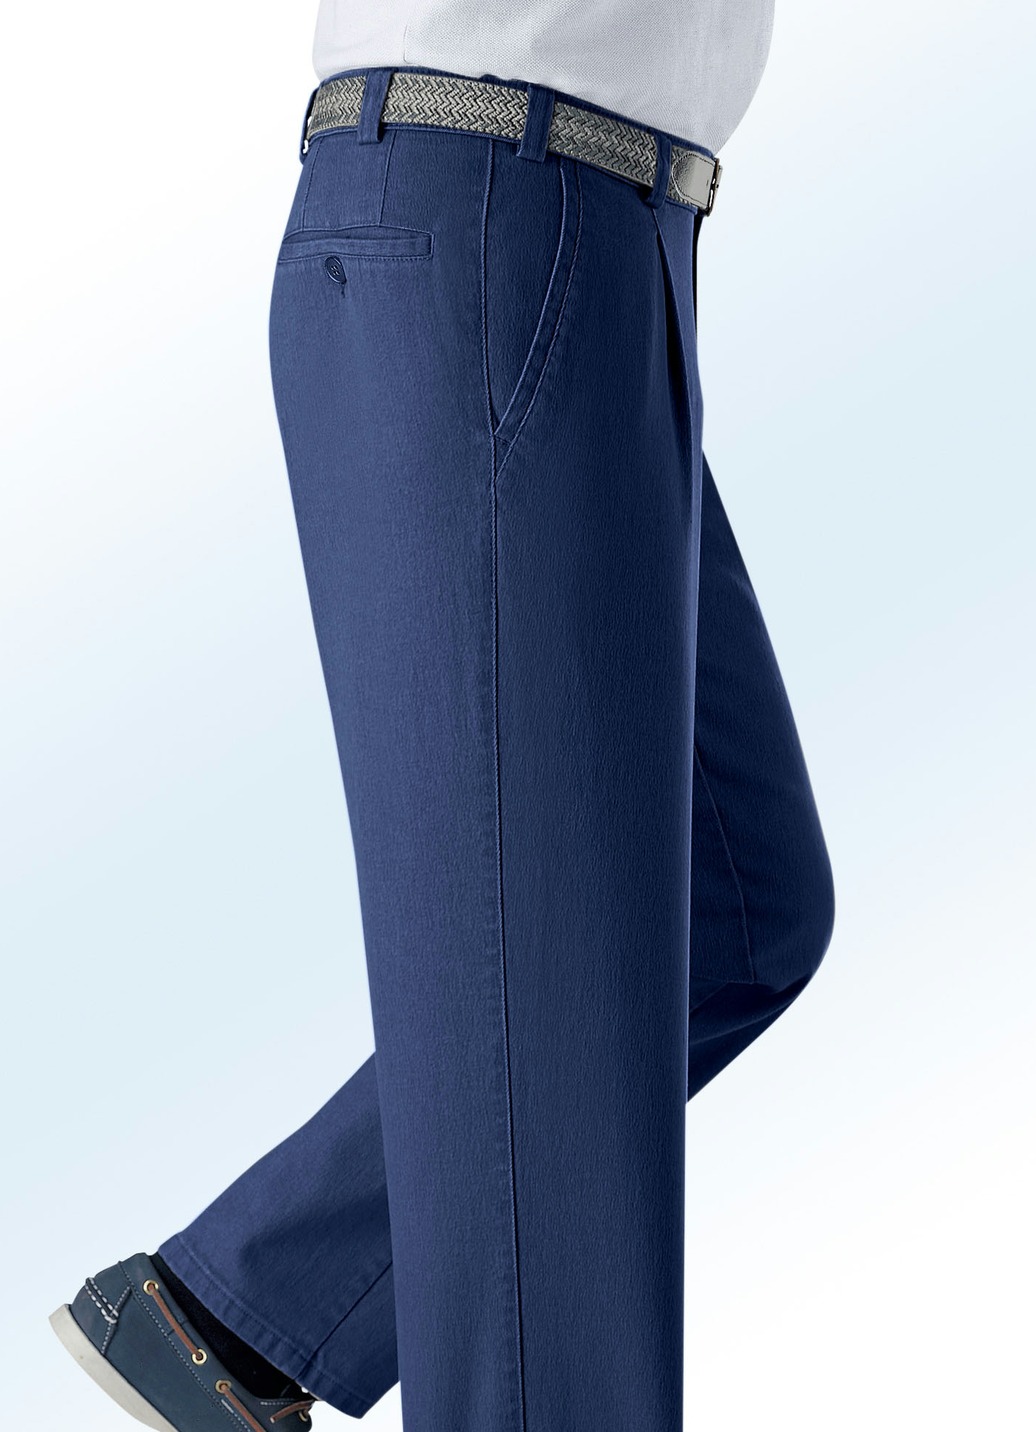 Unterbauch-Jeans mit Gürtel in 3 Farben, Jeansblau, Größe 27 von BADER